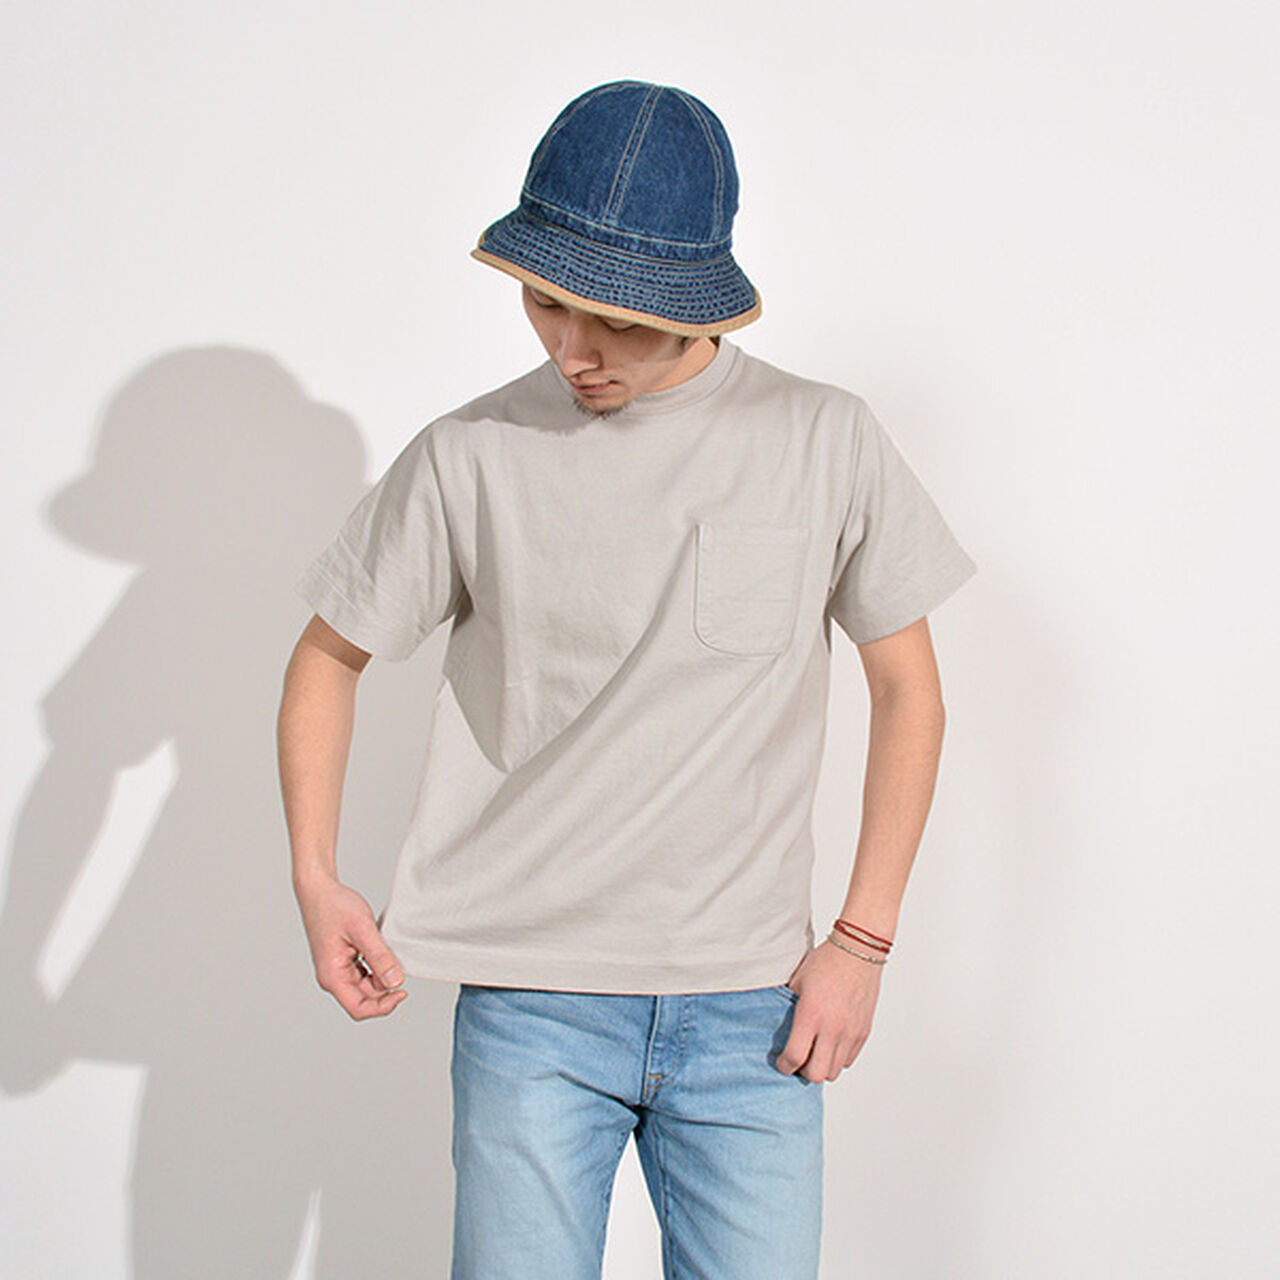 Extra Soft Standard Pocket T-Shirt,LightGrey, large image number 0